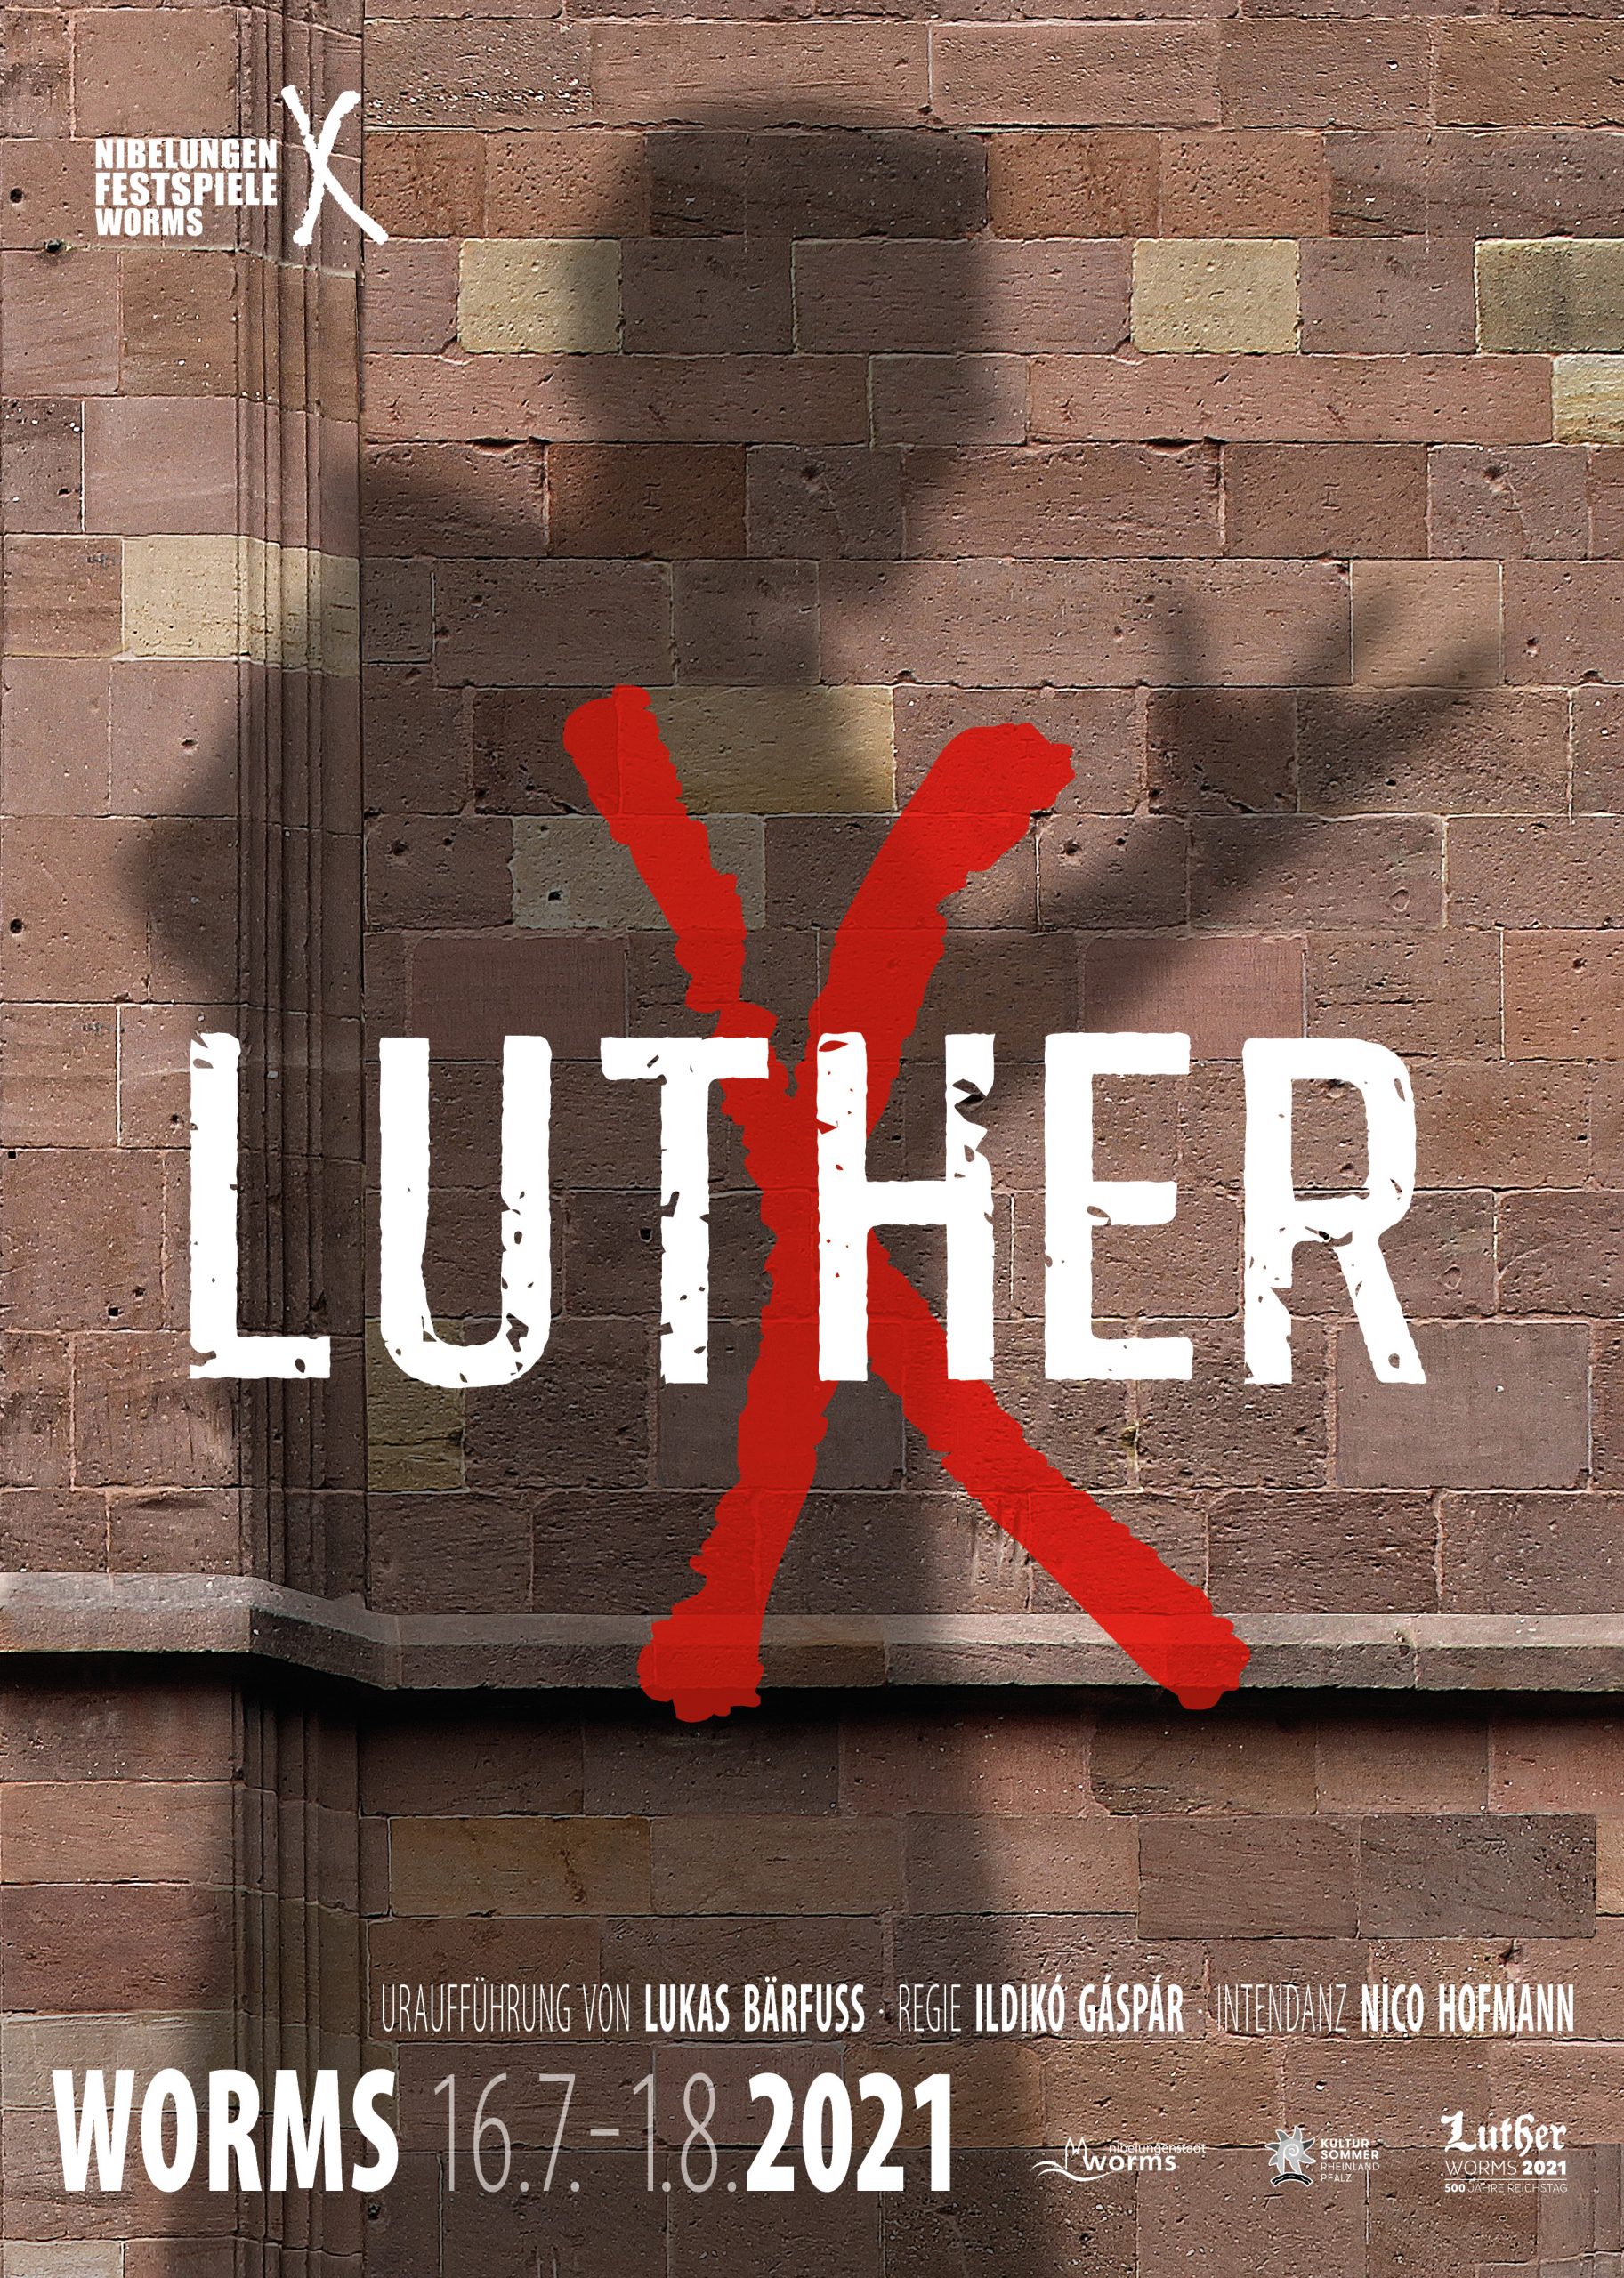 Hauptmotiv Luther Festspiele 2021 eichfelder artworks